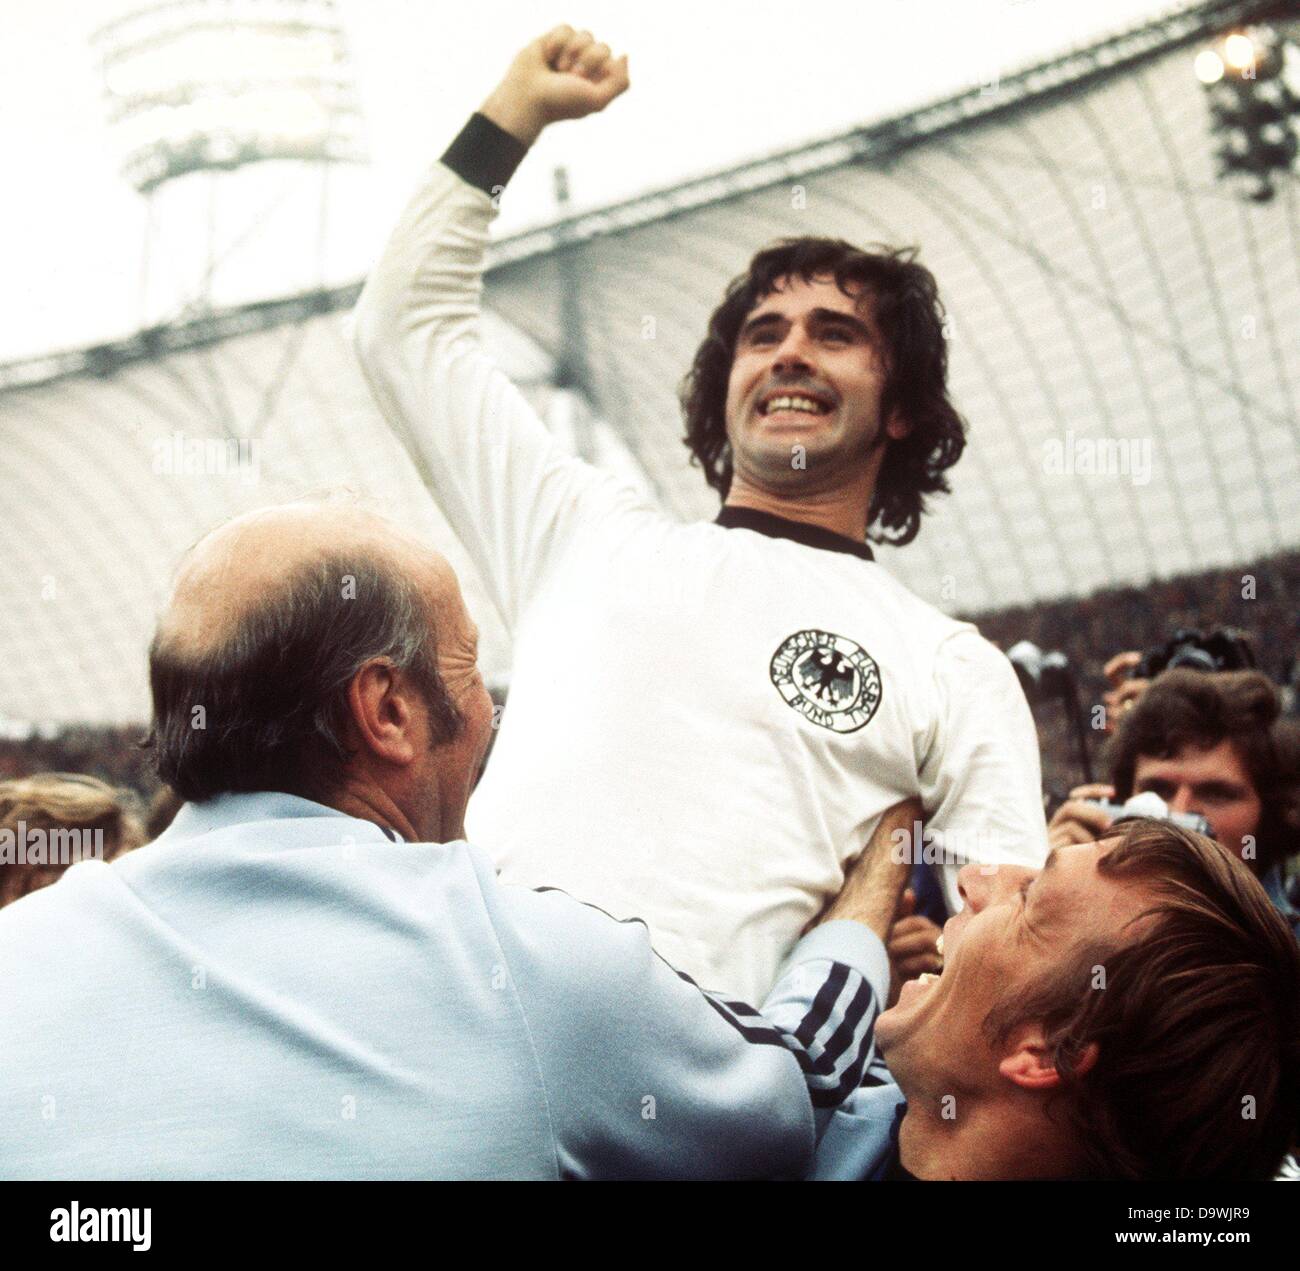 Après le coup de sifflet final avant l'allemand Gerd Mueller lève son poing droit en triomphe. Coach Helmut Schoen se joint à la célébration. Après de nombreuses situations dramatiques et une grande pression de l'équipe néerlandaise dans la seconde moitié, l'équipe allemande l'a emporté et a remporté la finale de la Coupe du Monde le 07 juillet 1974 à Munich, Germmany par un score de 2-1. Mots clés : Sport, SPO, Sport, SPO, Personnes, soccer, geste, sourire, célébrer, encourageant Banque D'Images